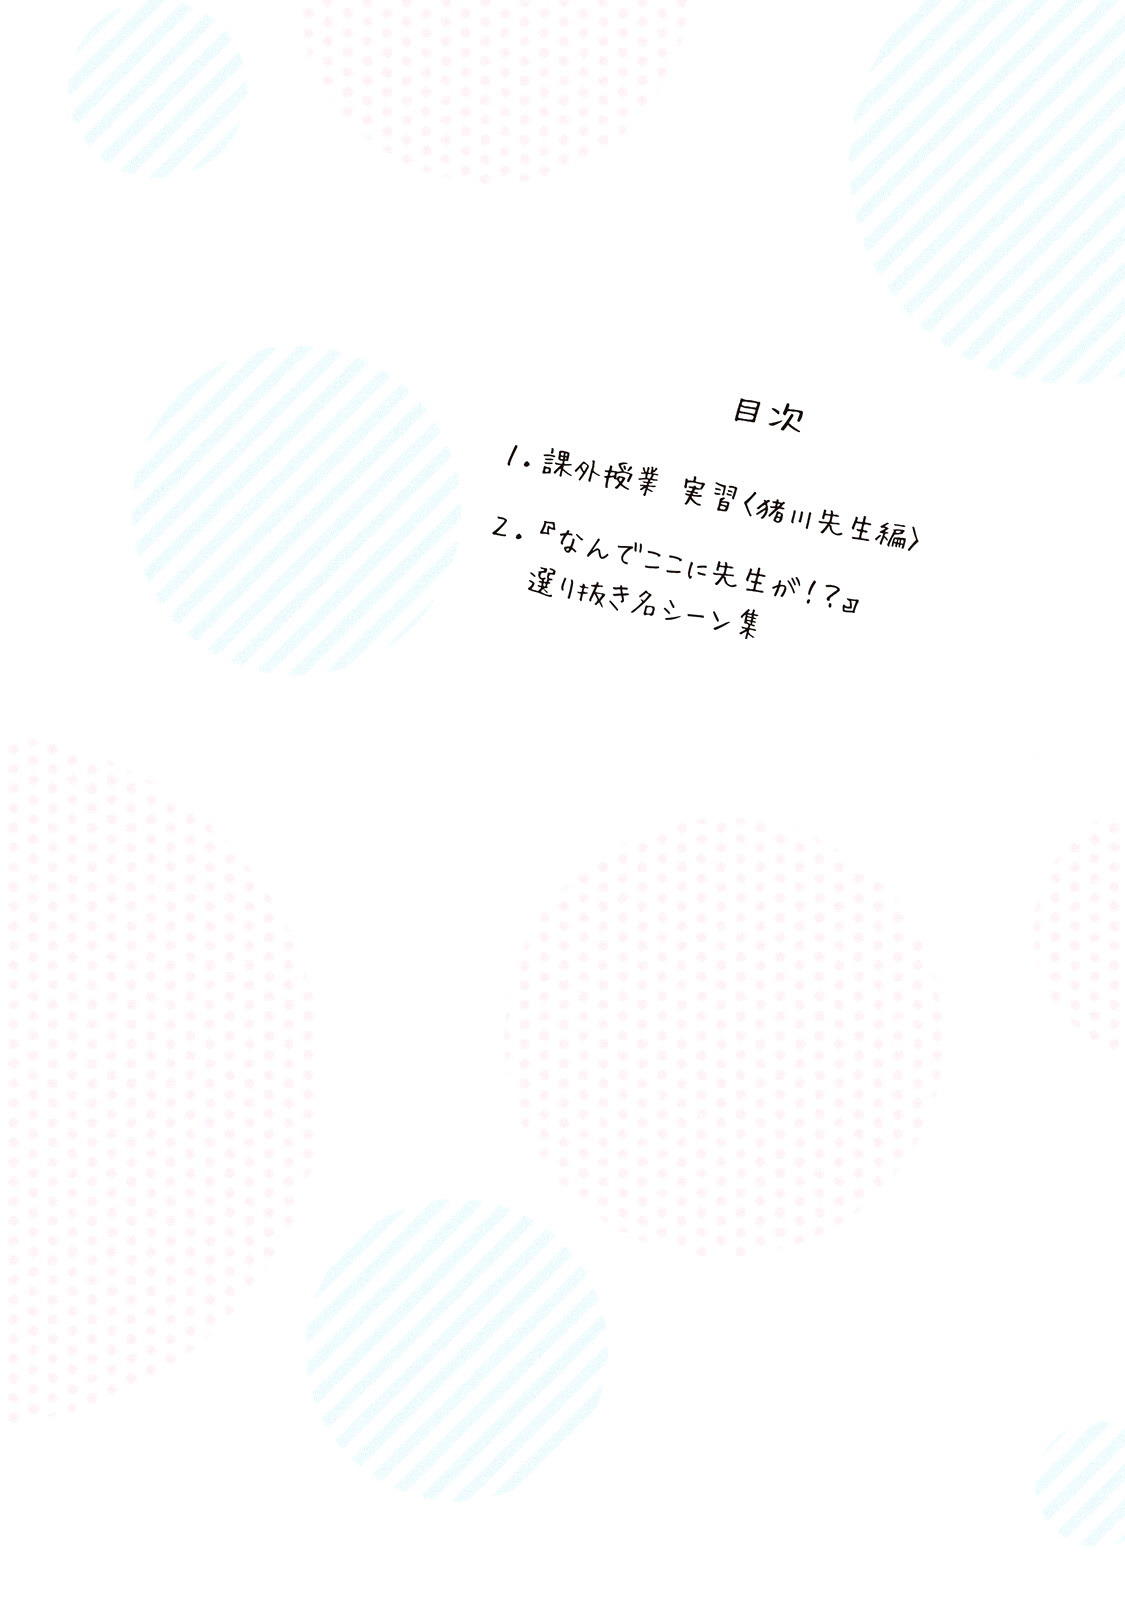 Why are you here Sensei!? vol.7 ch.70.1